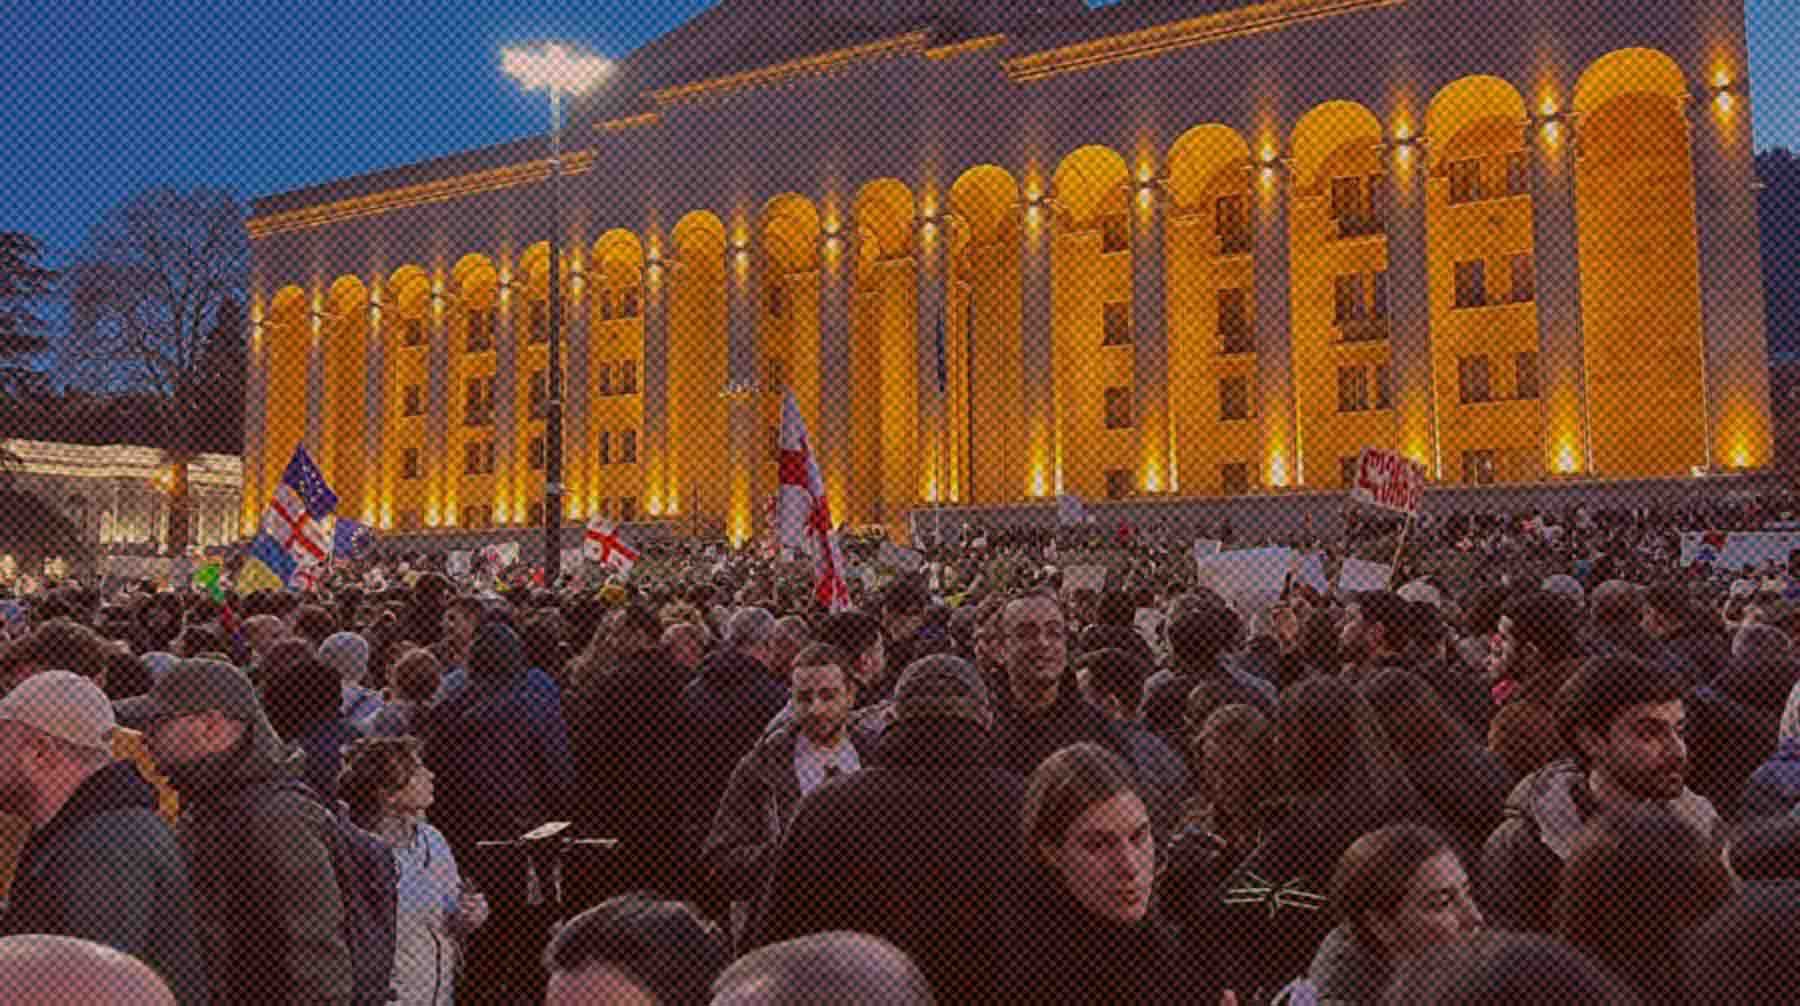 Dailystorm - Законопроект об иноагентах отозван из парламента Грузии на фоне протестов